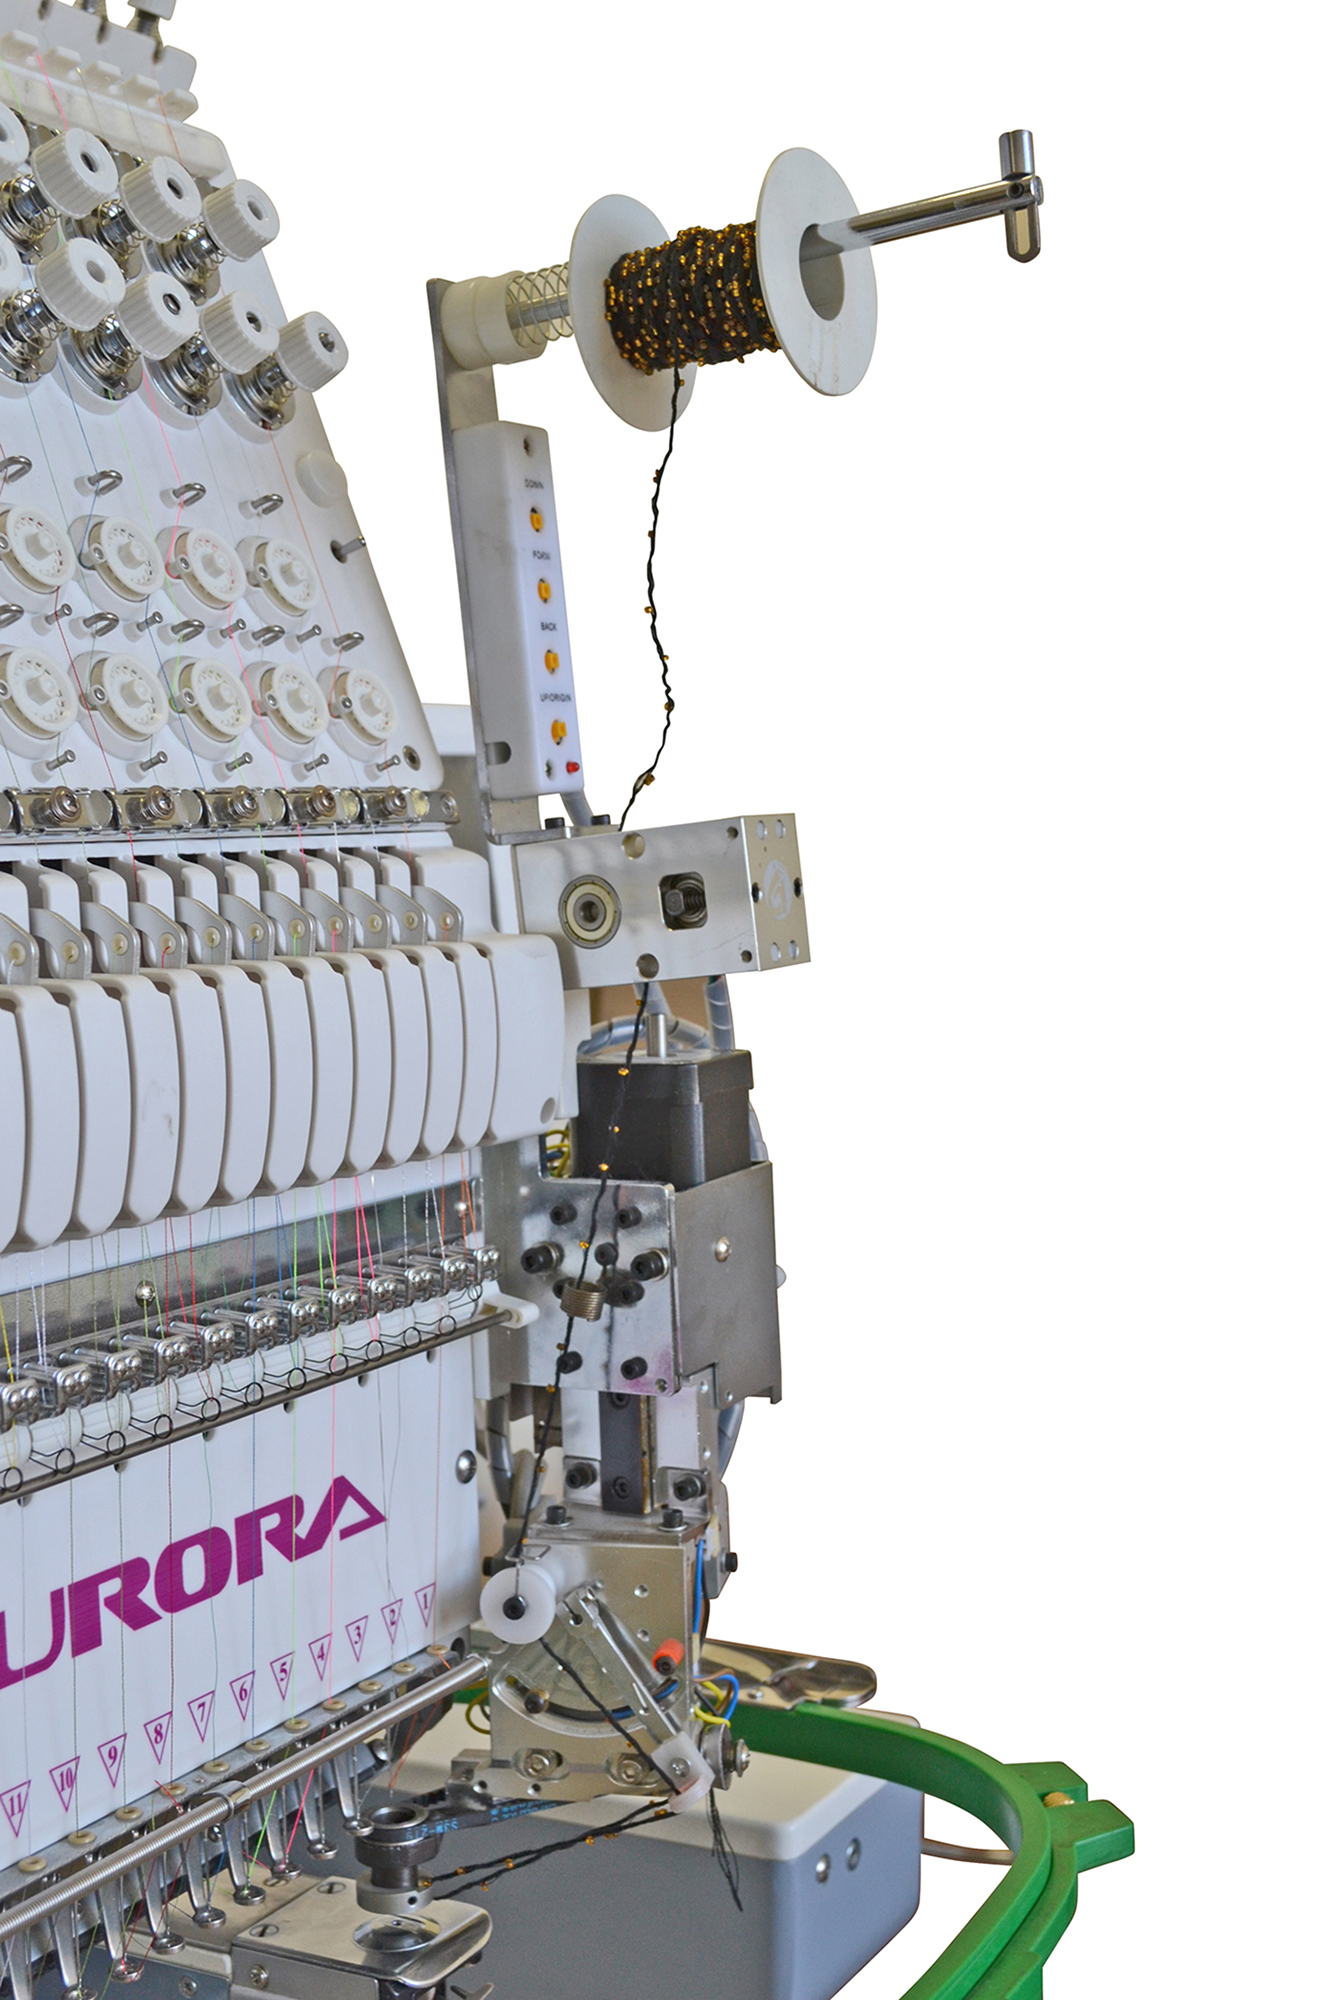 Вышивальная машина AURORA CTF 1501 (51*36) CS